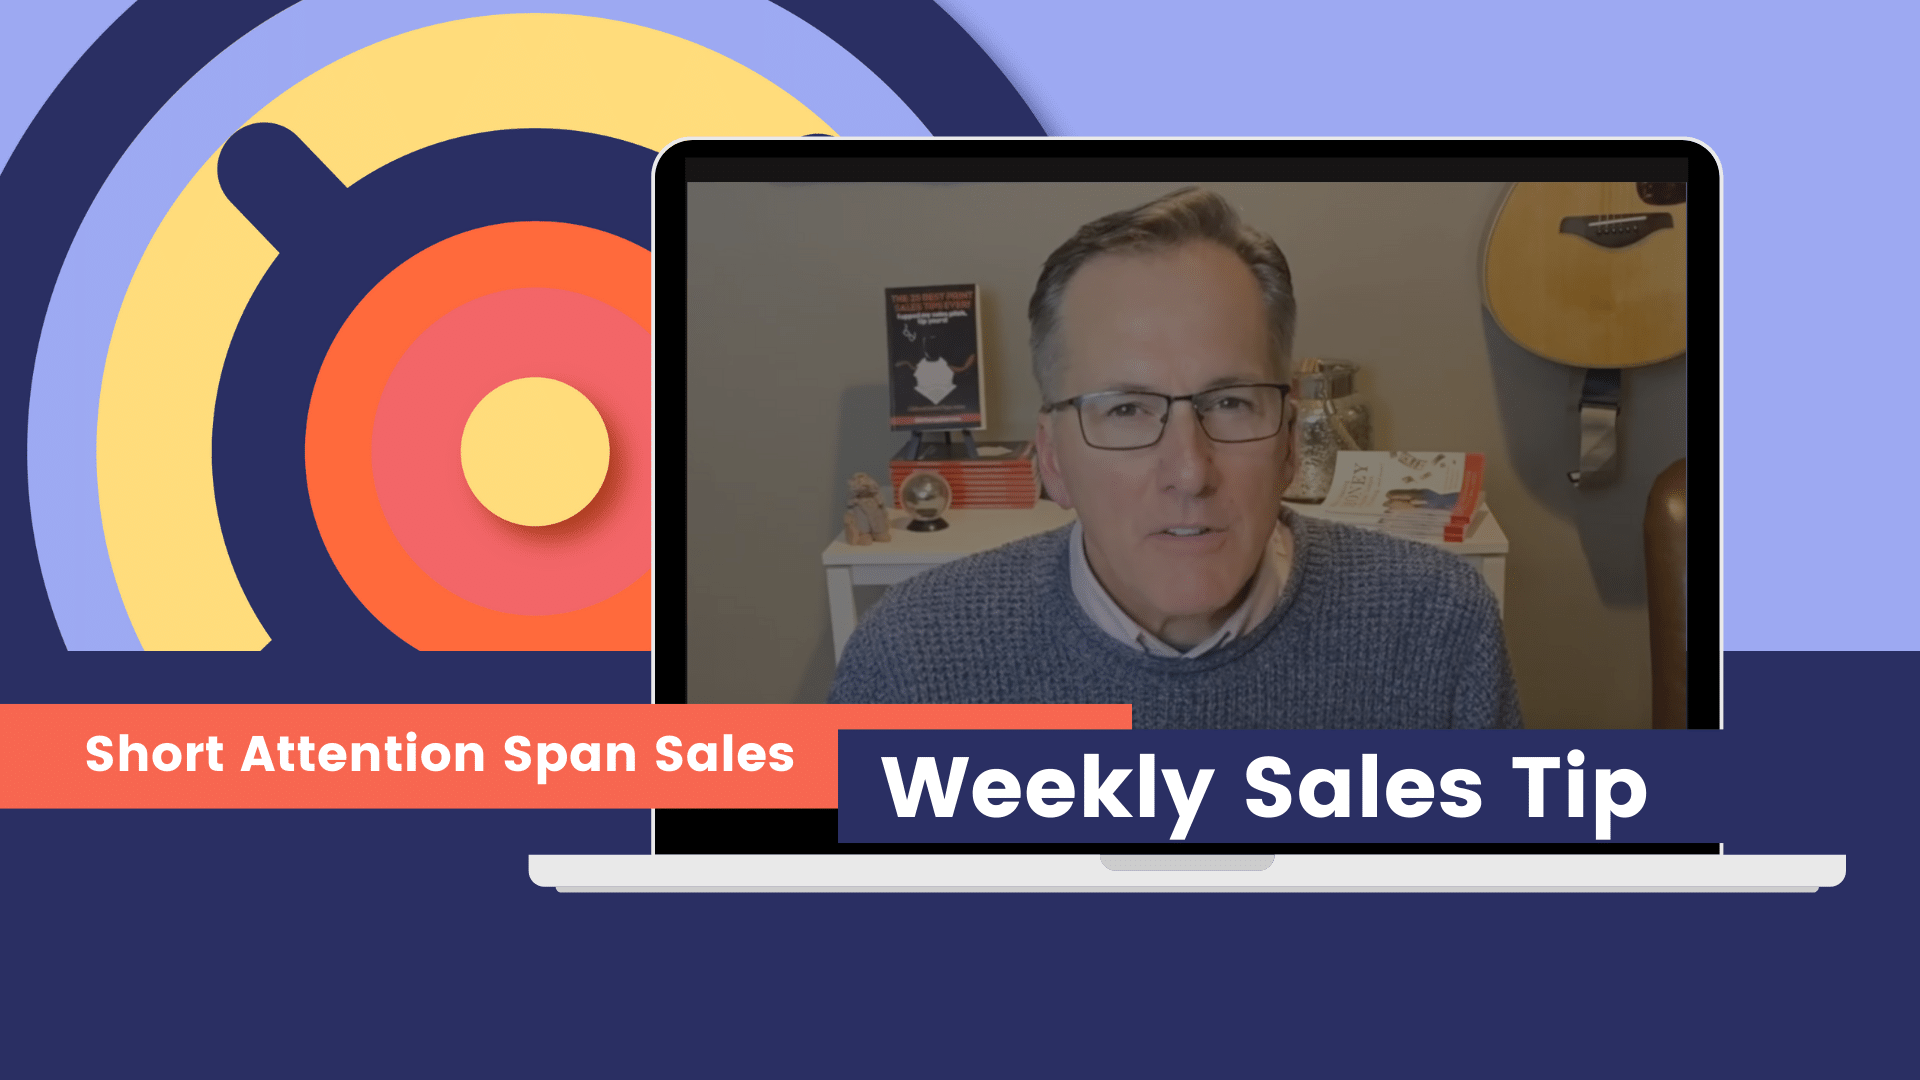 weekly sales tip (1920 × 1080 px)